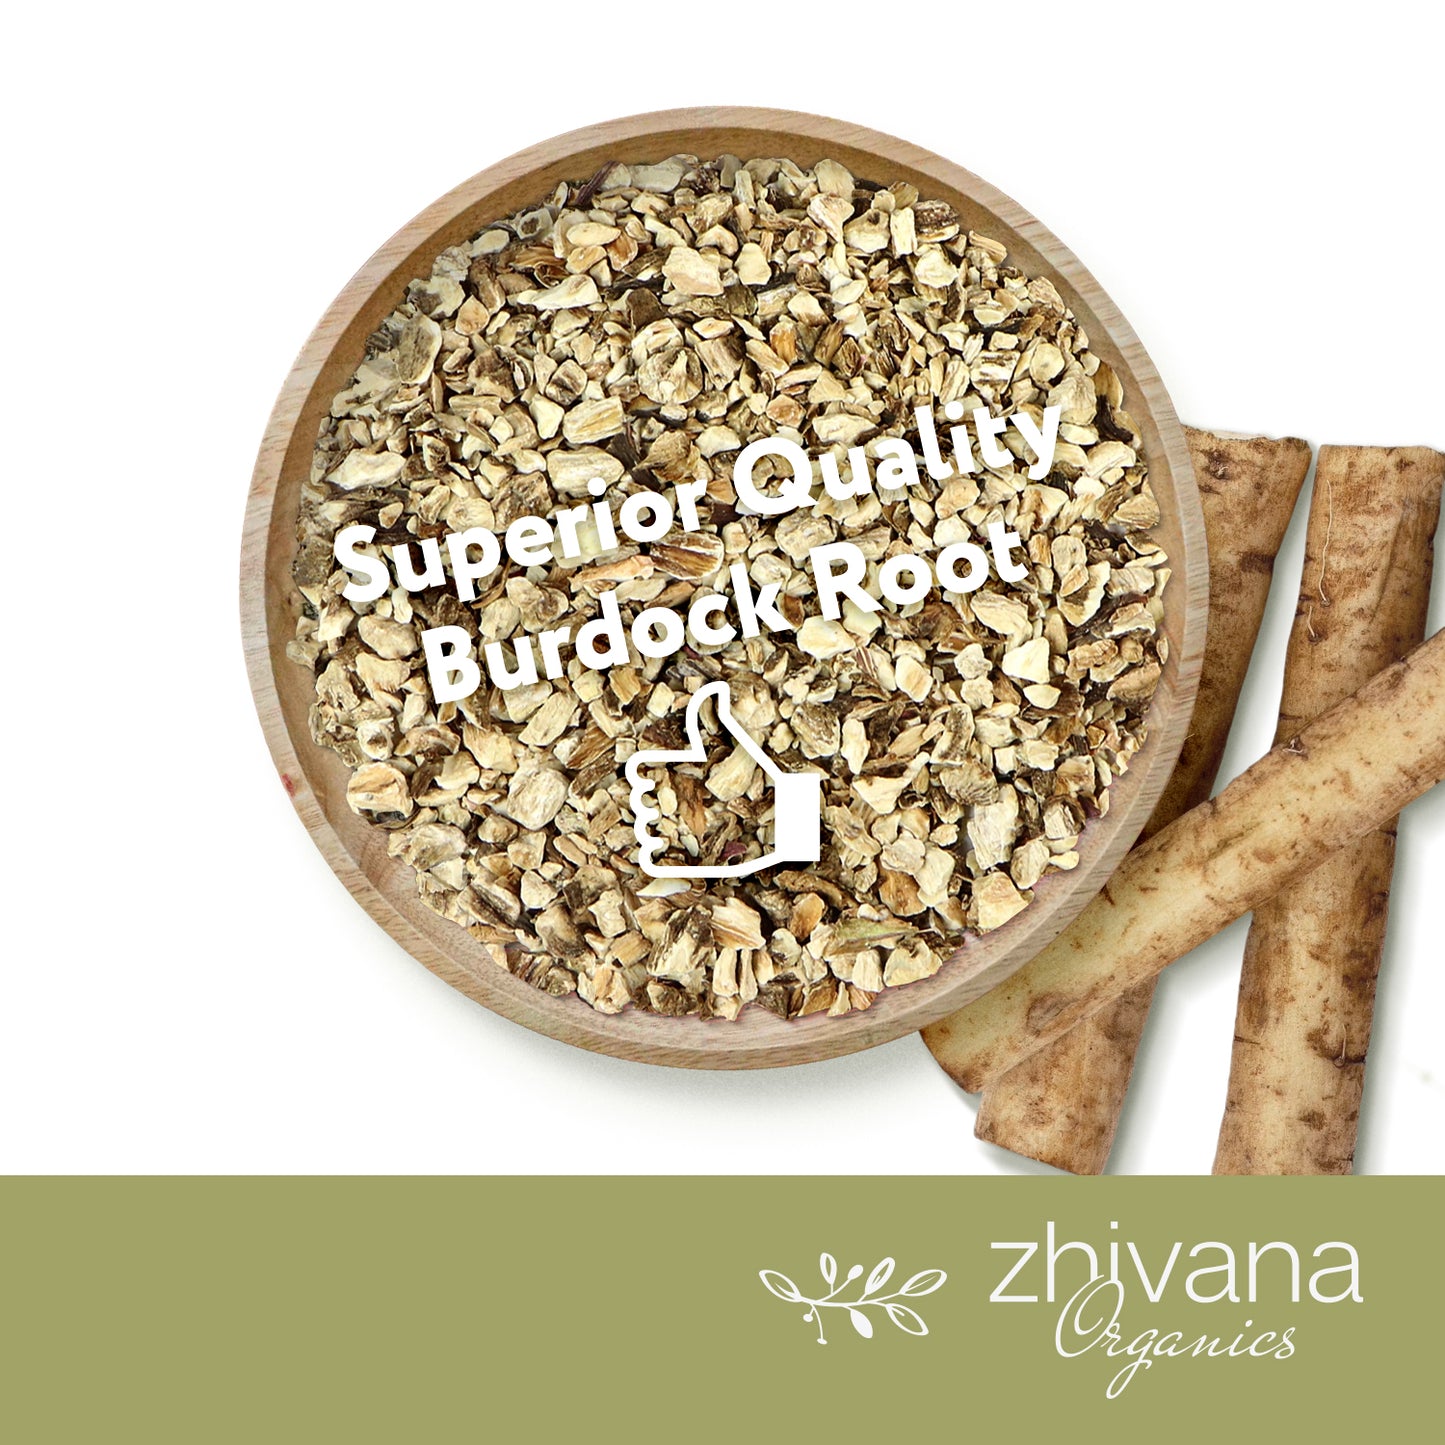 Burdock Root Dried Cut & Sifted - Zhivana Organics